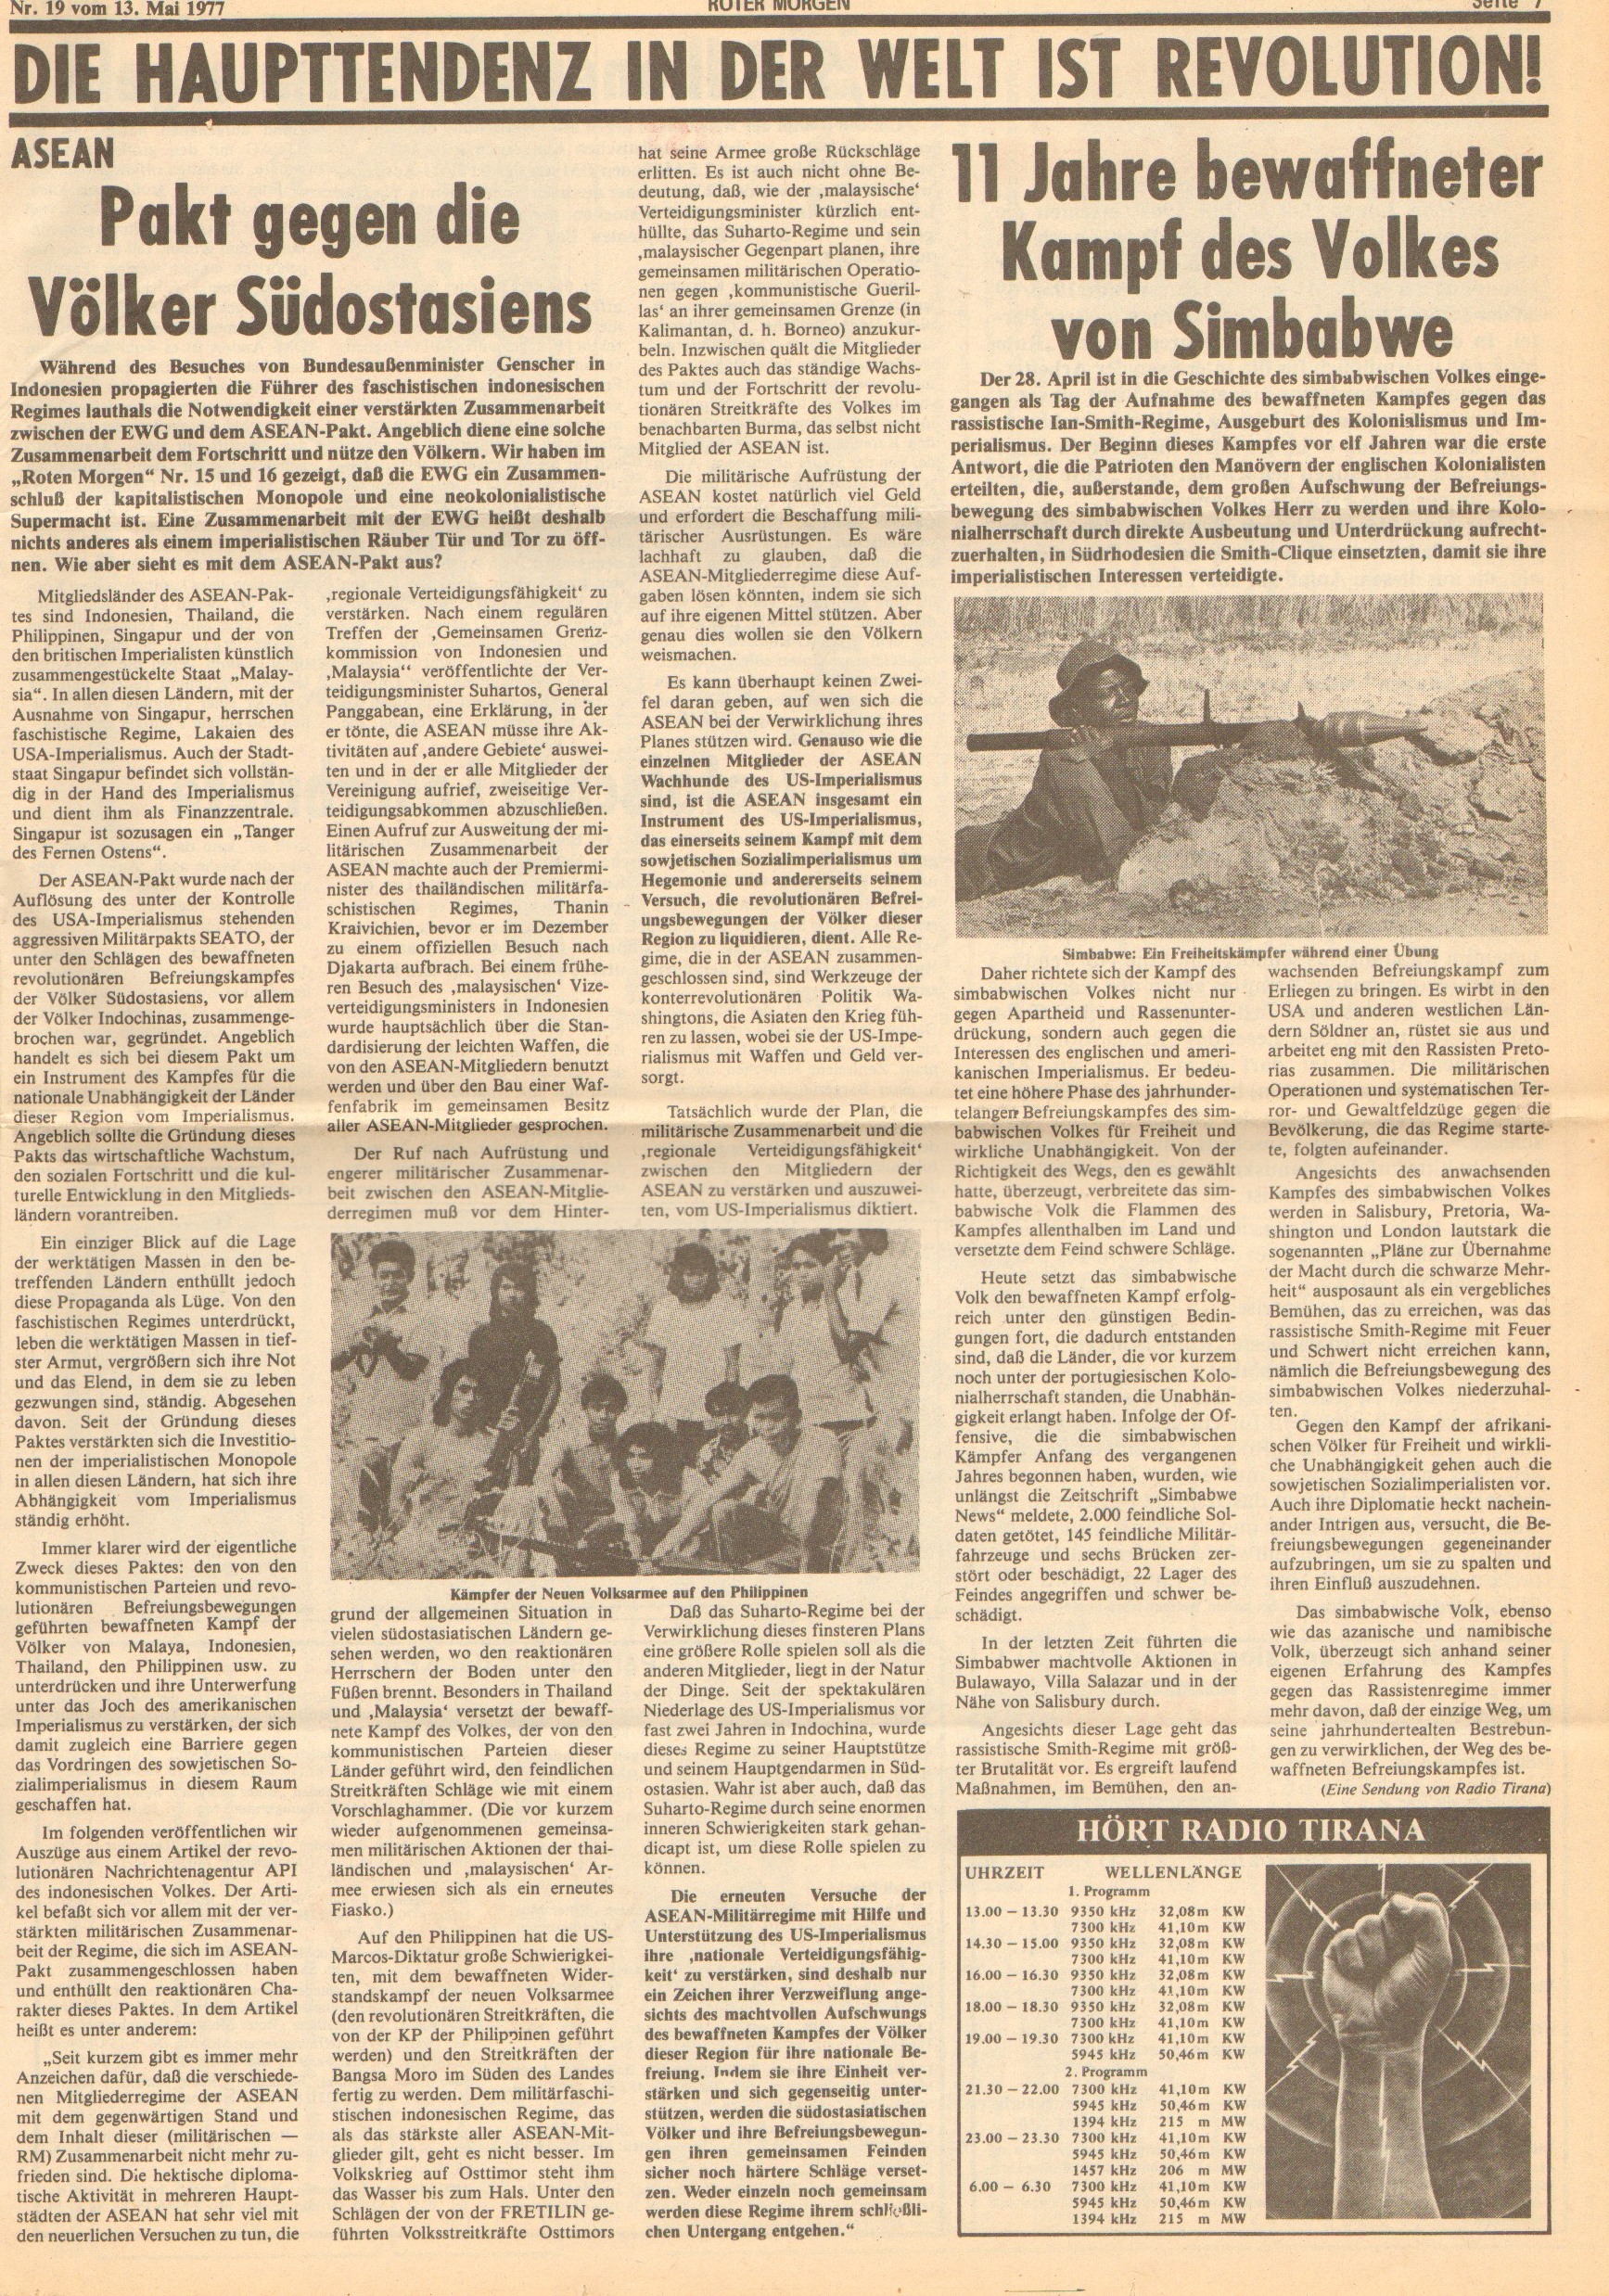 Roter Morgen, 11. Jg., 13. Mai 1977, Nr. 19, Seite 7